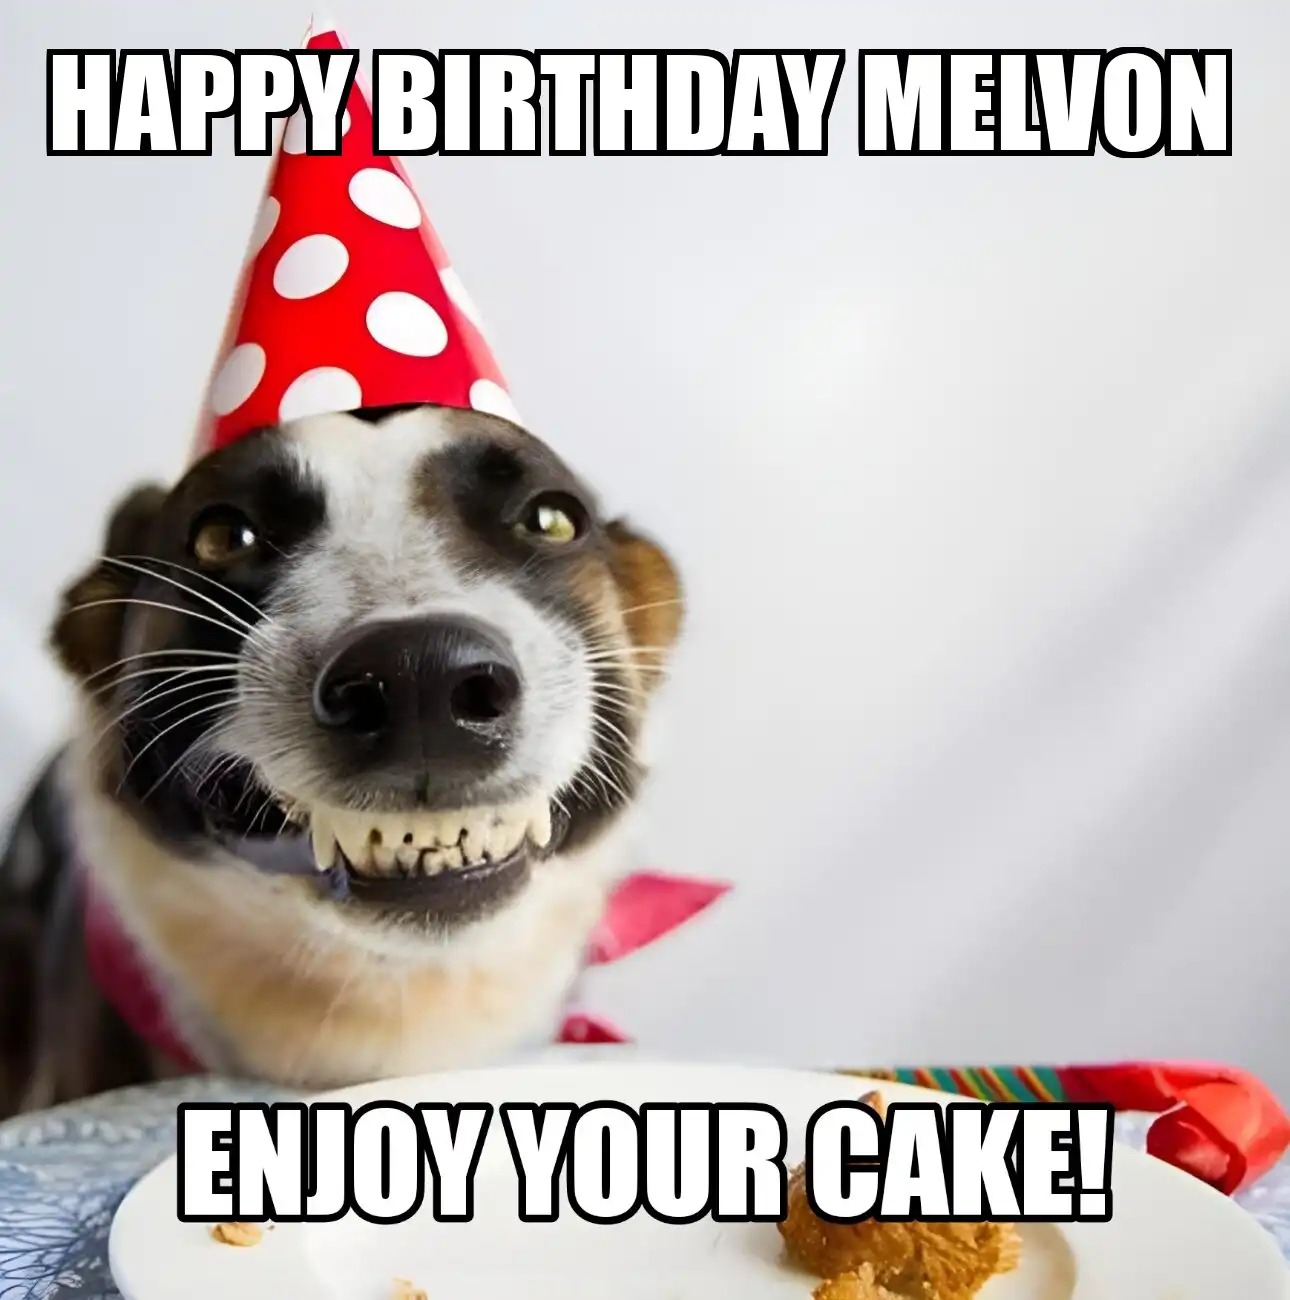 Happy Birthday Melvon Enjoy Your Cake Dog Meme